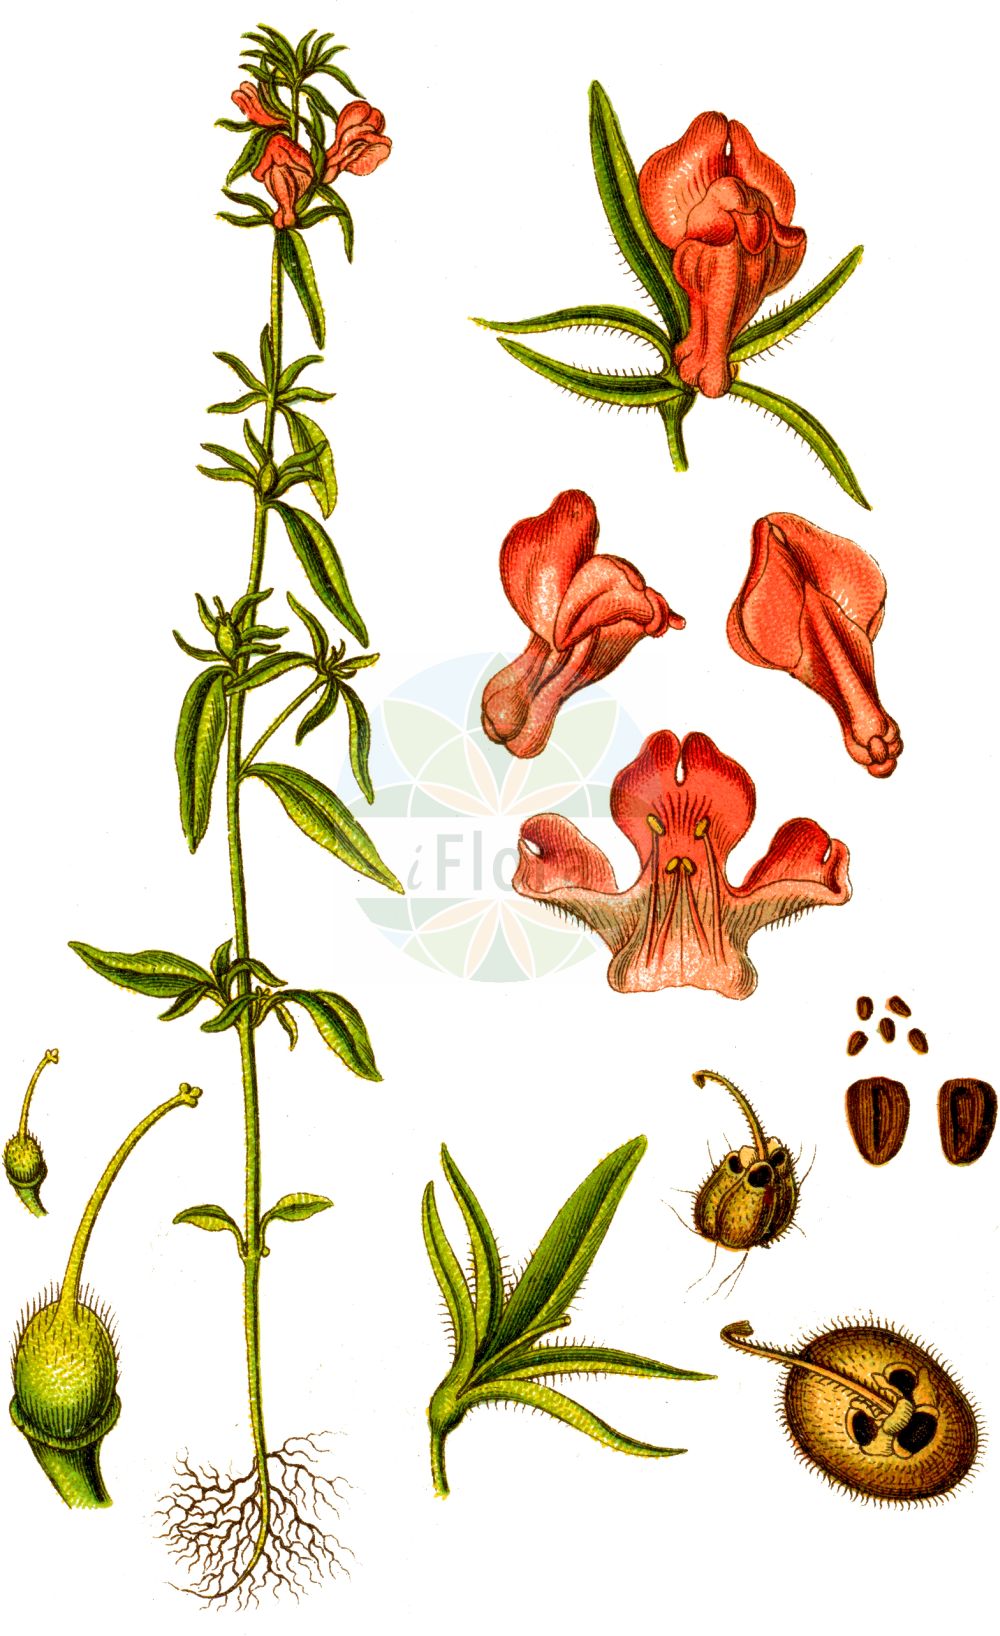 Historische Abbildung von Misopates orontium (Acker-Löwenmaul - Weasel's-snout). Das Bild zeigt Blatt, Bluete, Frucht und Same. ---- Historical Drawing of Misopates orontium (Acker-Löwenmaul - Weasel's-snout). The image is showing leaf, flower, fruit and seed.(Misopates orontium,Acker-Löwenmaul,Weasel's-snout,Antirrhinum orontium,Misopates orontium,Acker-Loewenmaul,Katzenmaul,Weasel's-snout,Calf's-snout,Linearleaf Snapdragon,Corn Snapdragon,Lesser Snapdragon,Linear-leaved Snapdragon,Wild Antirrhinum,Misopates,Katzenmaul,Snapdragon,Plantaginaceae,Wegerichgewächse,Plantain family,Blatt,Bluete,Frucht,Same,leaf,flower,fruit,seed,Sturm (1796f))